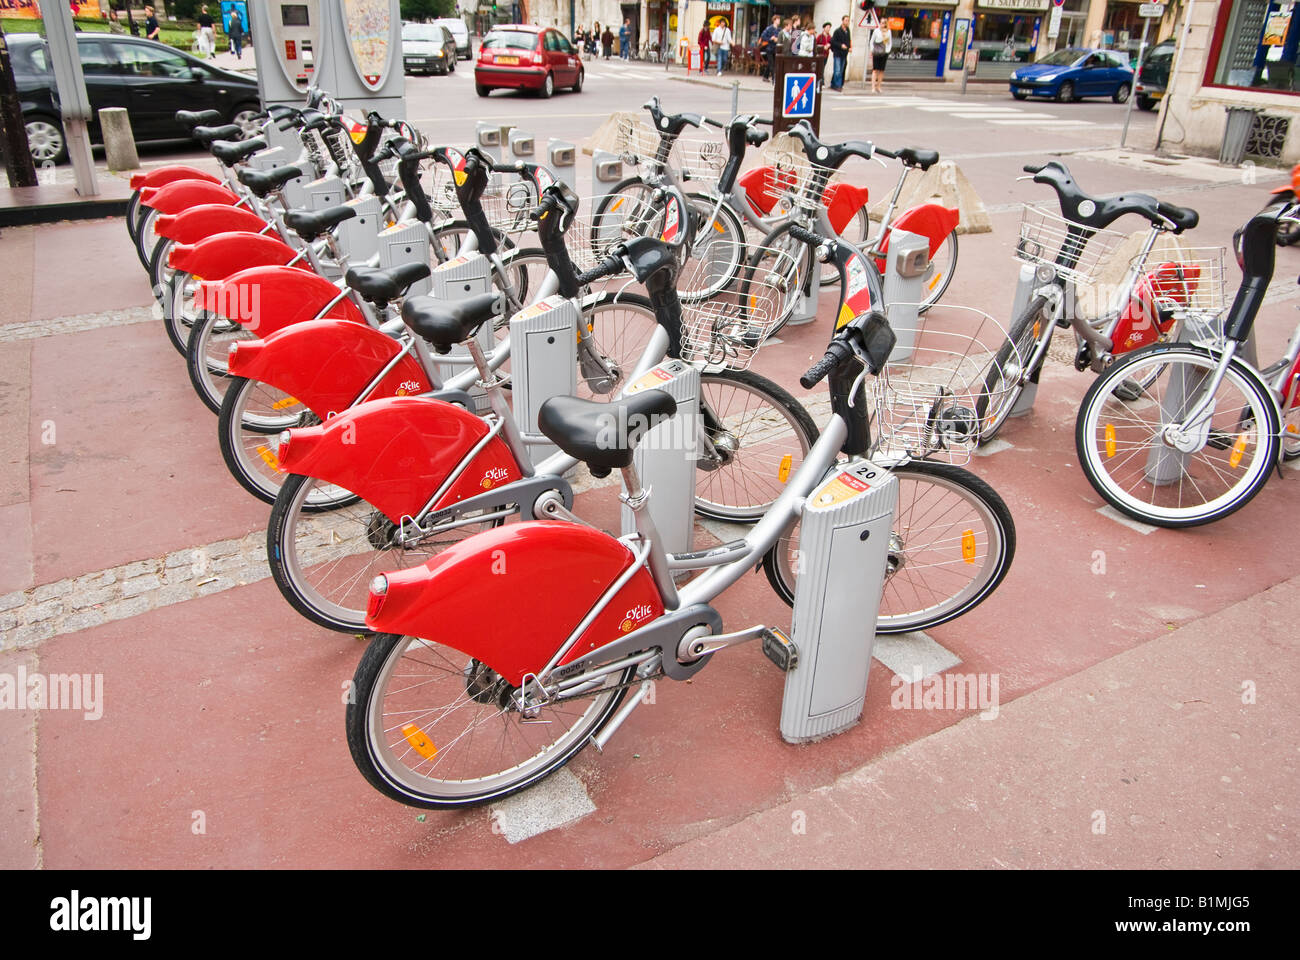 Location de vélo gare paiement cyclique et des vélos de location prêt pour à Rouen Normandie France Banque D'Images